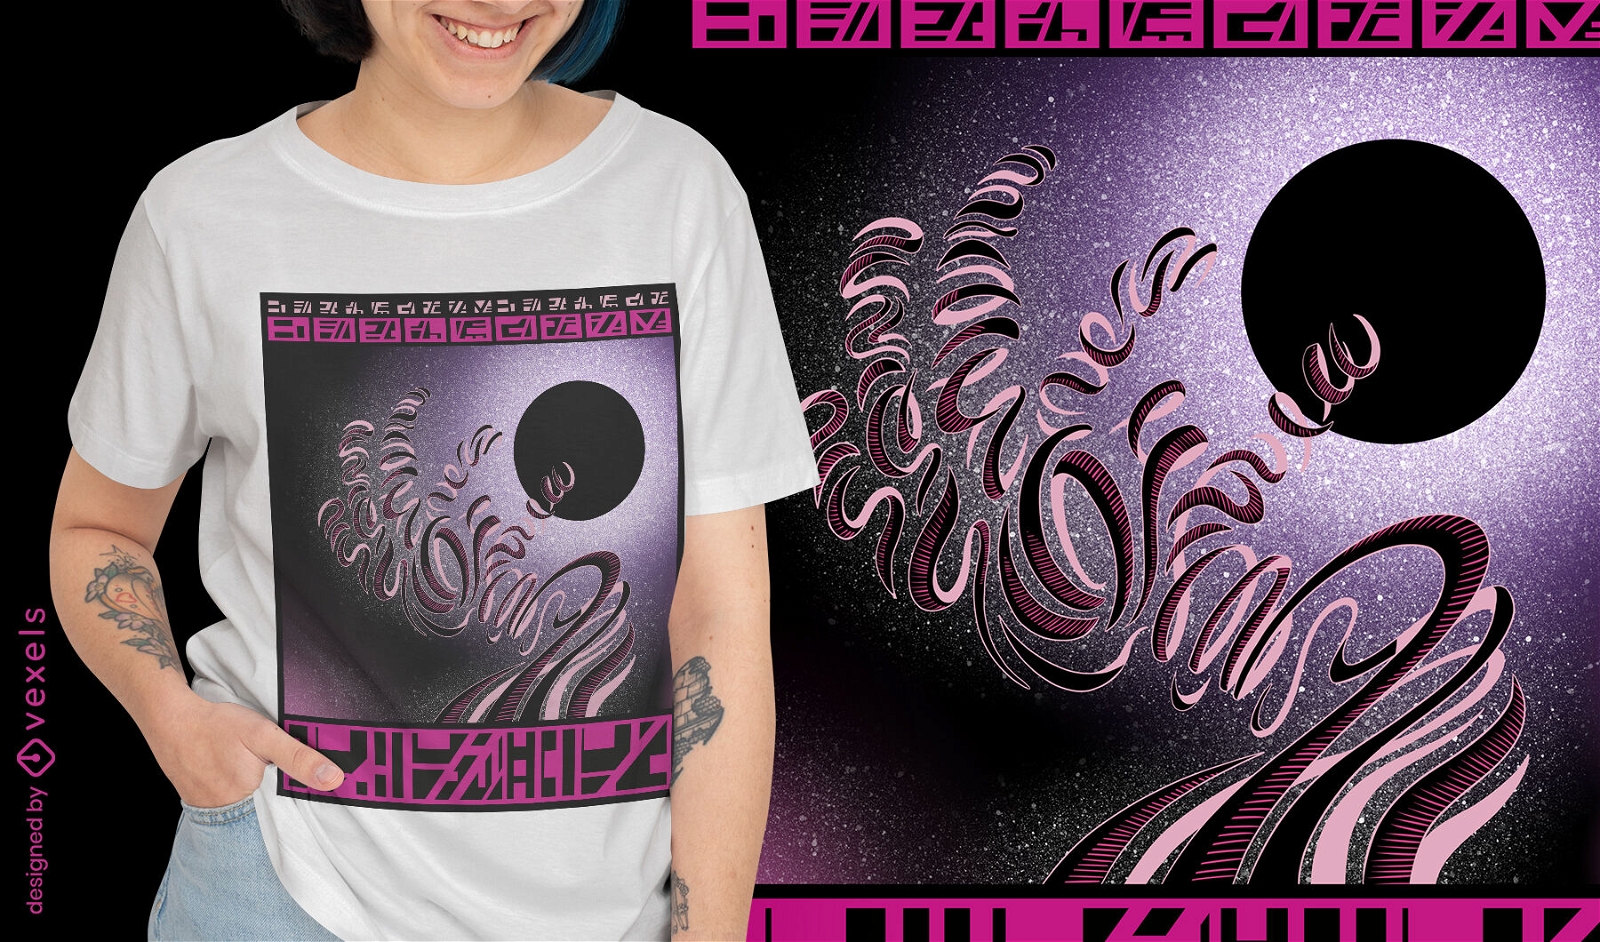 Mão cósmica sobrenatural no design de camiseta espacial